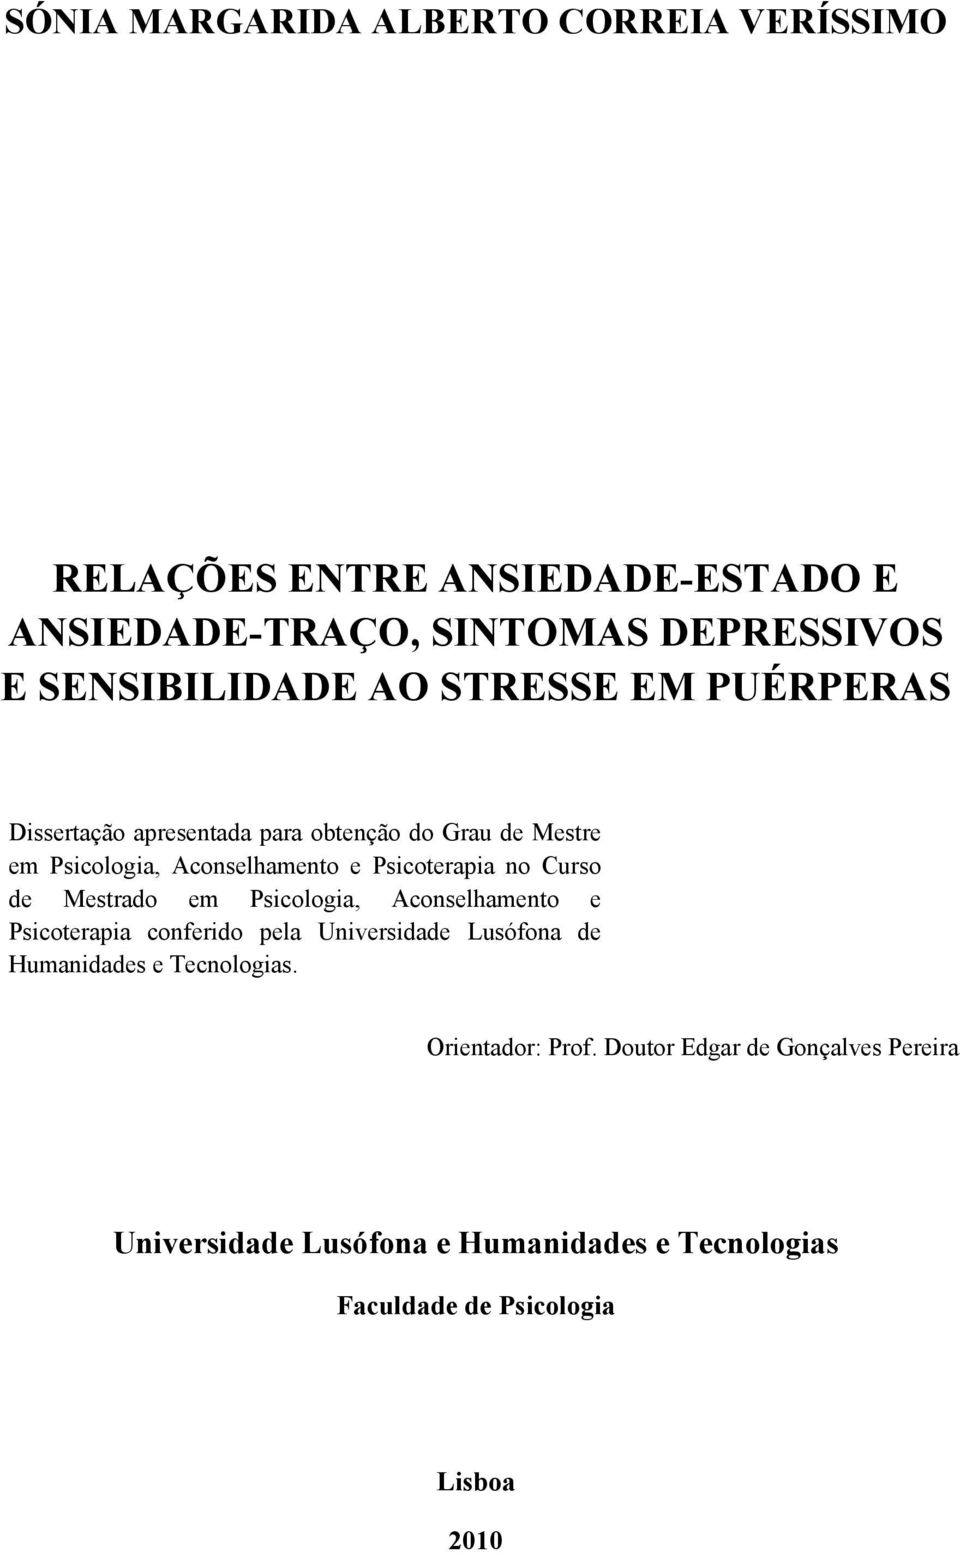 Curso de Mestrado em Psicologia, Aconselhamento e Psicoterapia conferido pela Universidade Lusófona de Humanidades e Tecnologias.